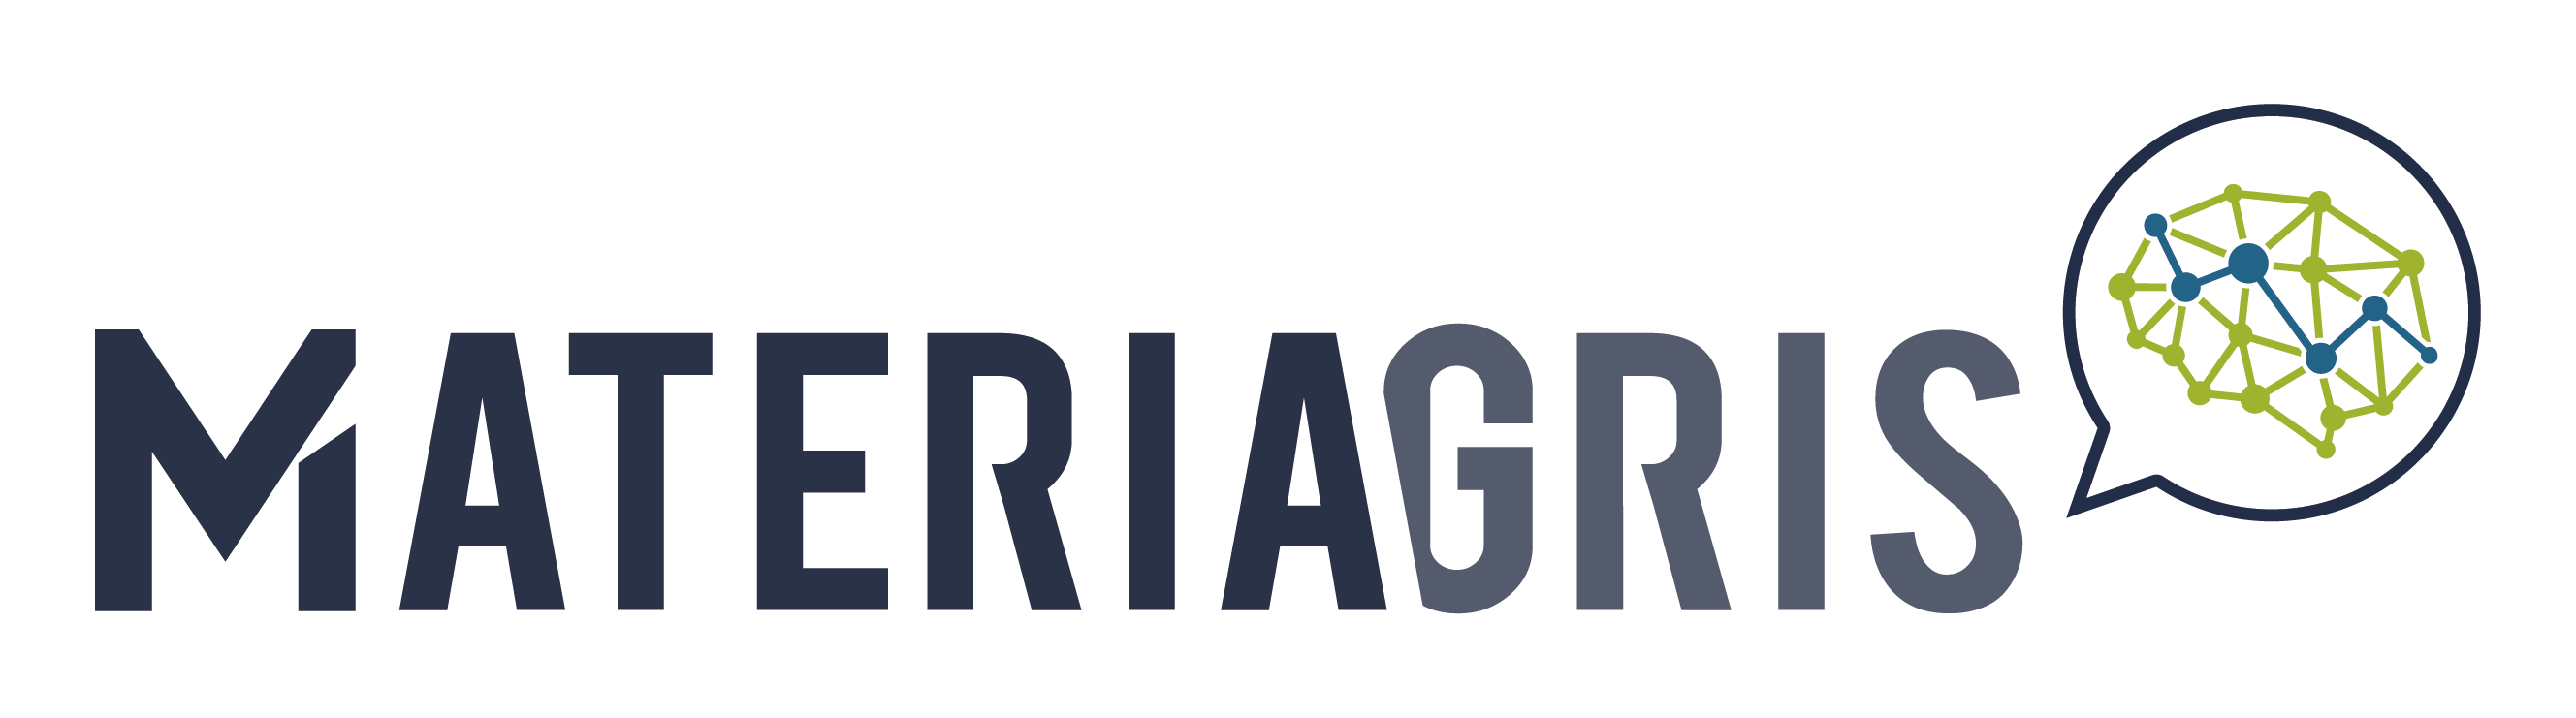 Logo de Materiagris, parte de parte de STELA - Automation made simple